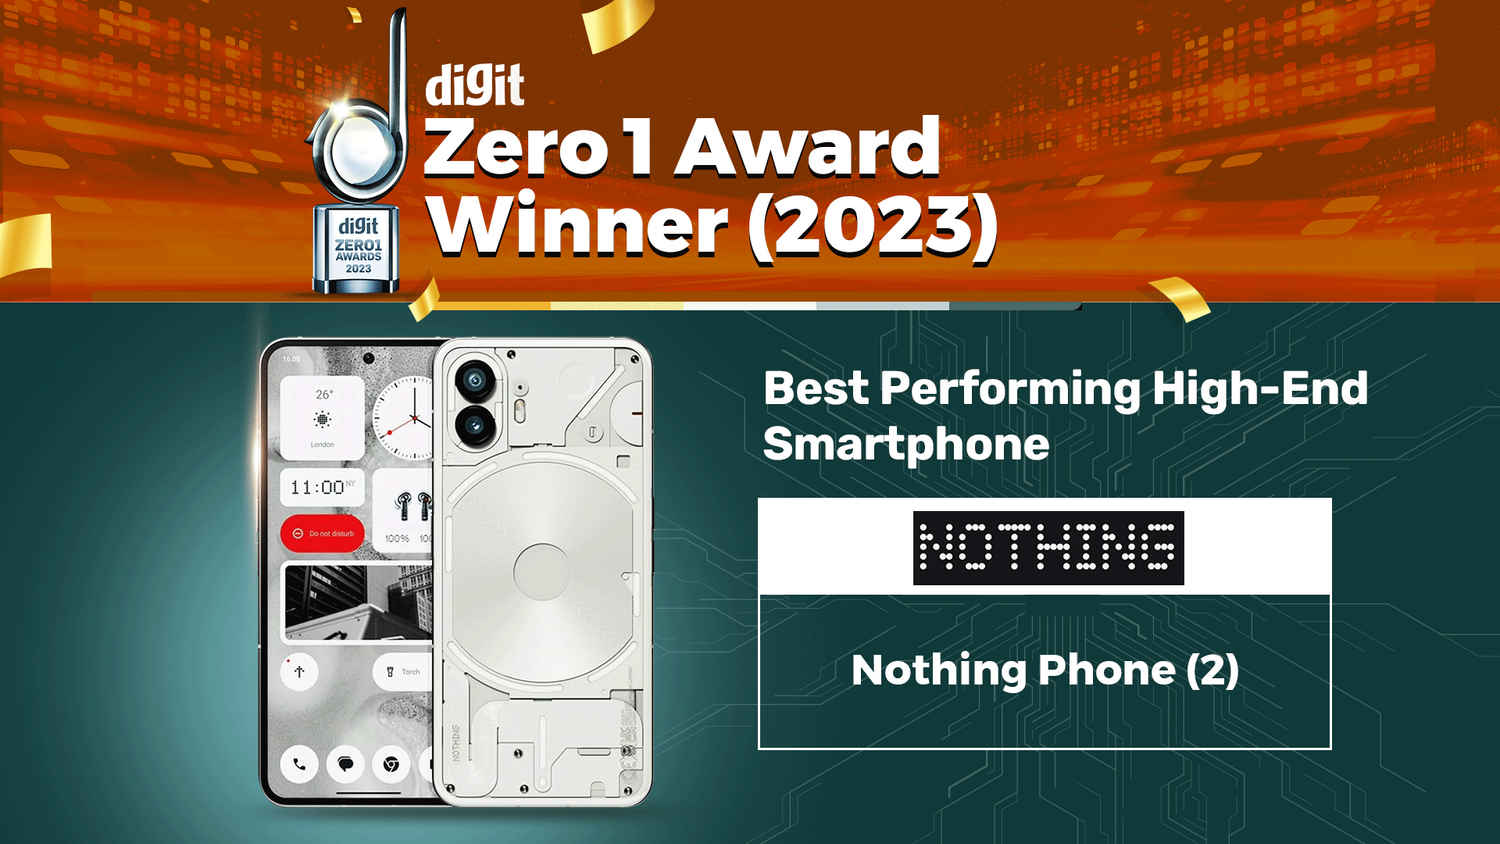 Digit Zero1 Awards and Best Buy Awards 2023: 35 से 50 हजार रुपये की कीमत में बेस्ट परफ़ॉर्मिंग हाई-एंड फोन्स